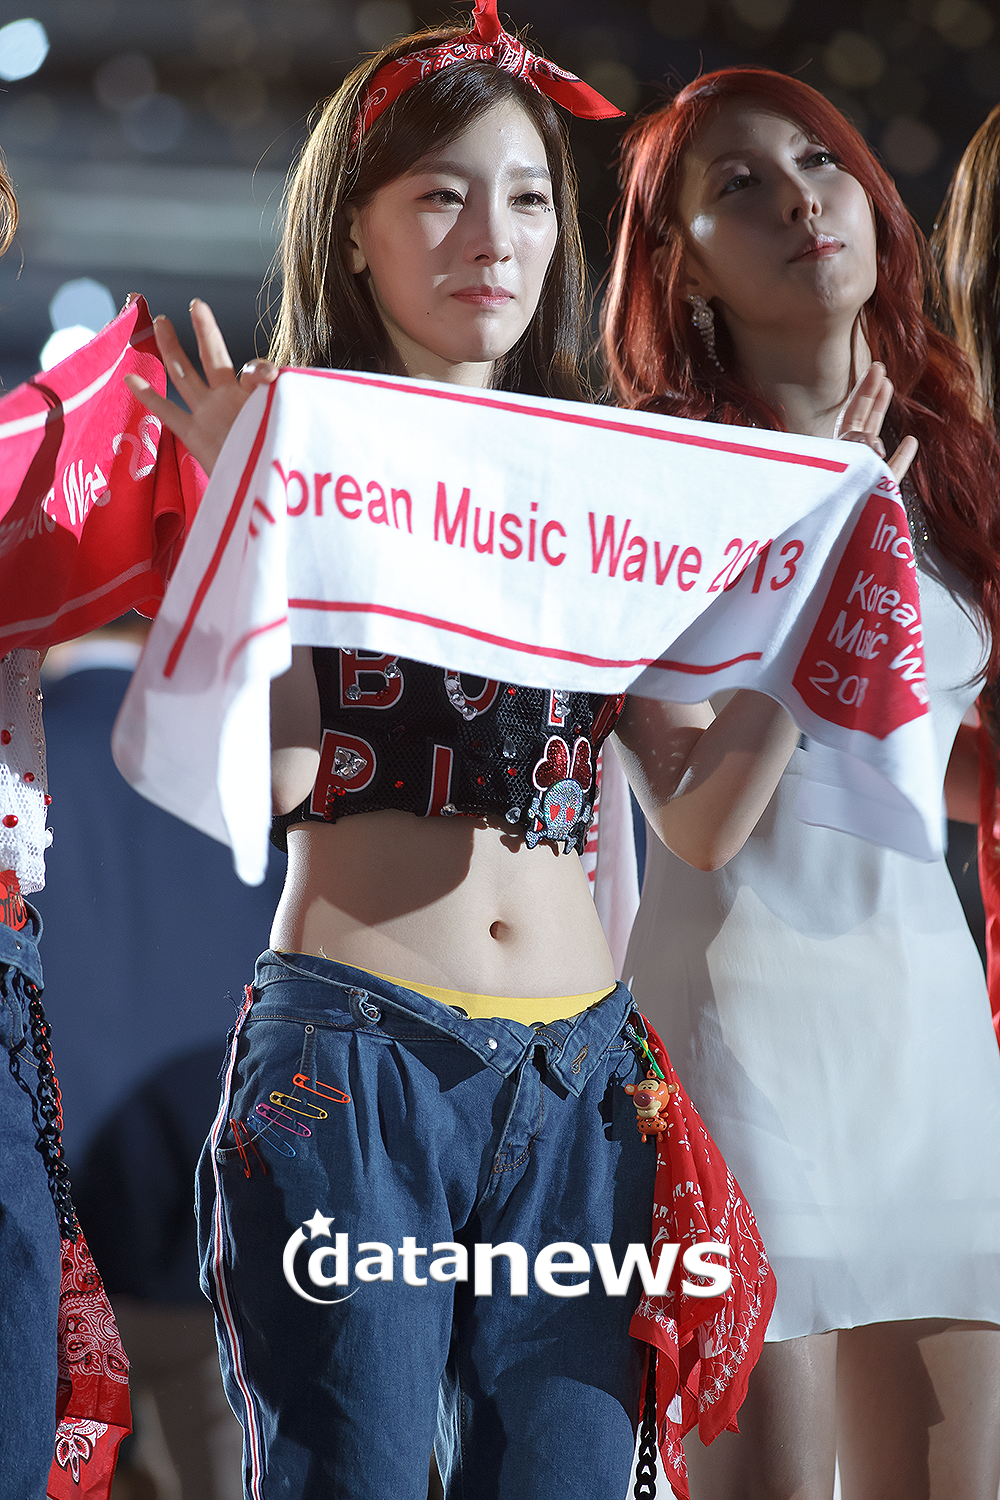 [PIC][01-09-2013]Hình ảnh mới nhất từ "Incheon Korean Music Wave 2013" của SNSD và MC YulTi vào tối nay - Page 2 254FA44C52238E1616581B